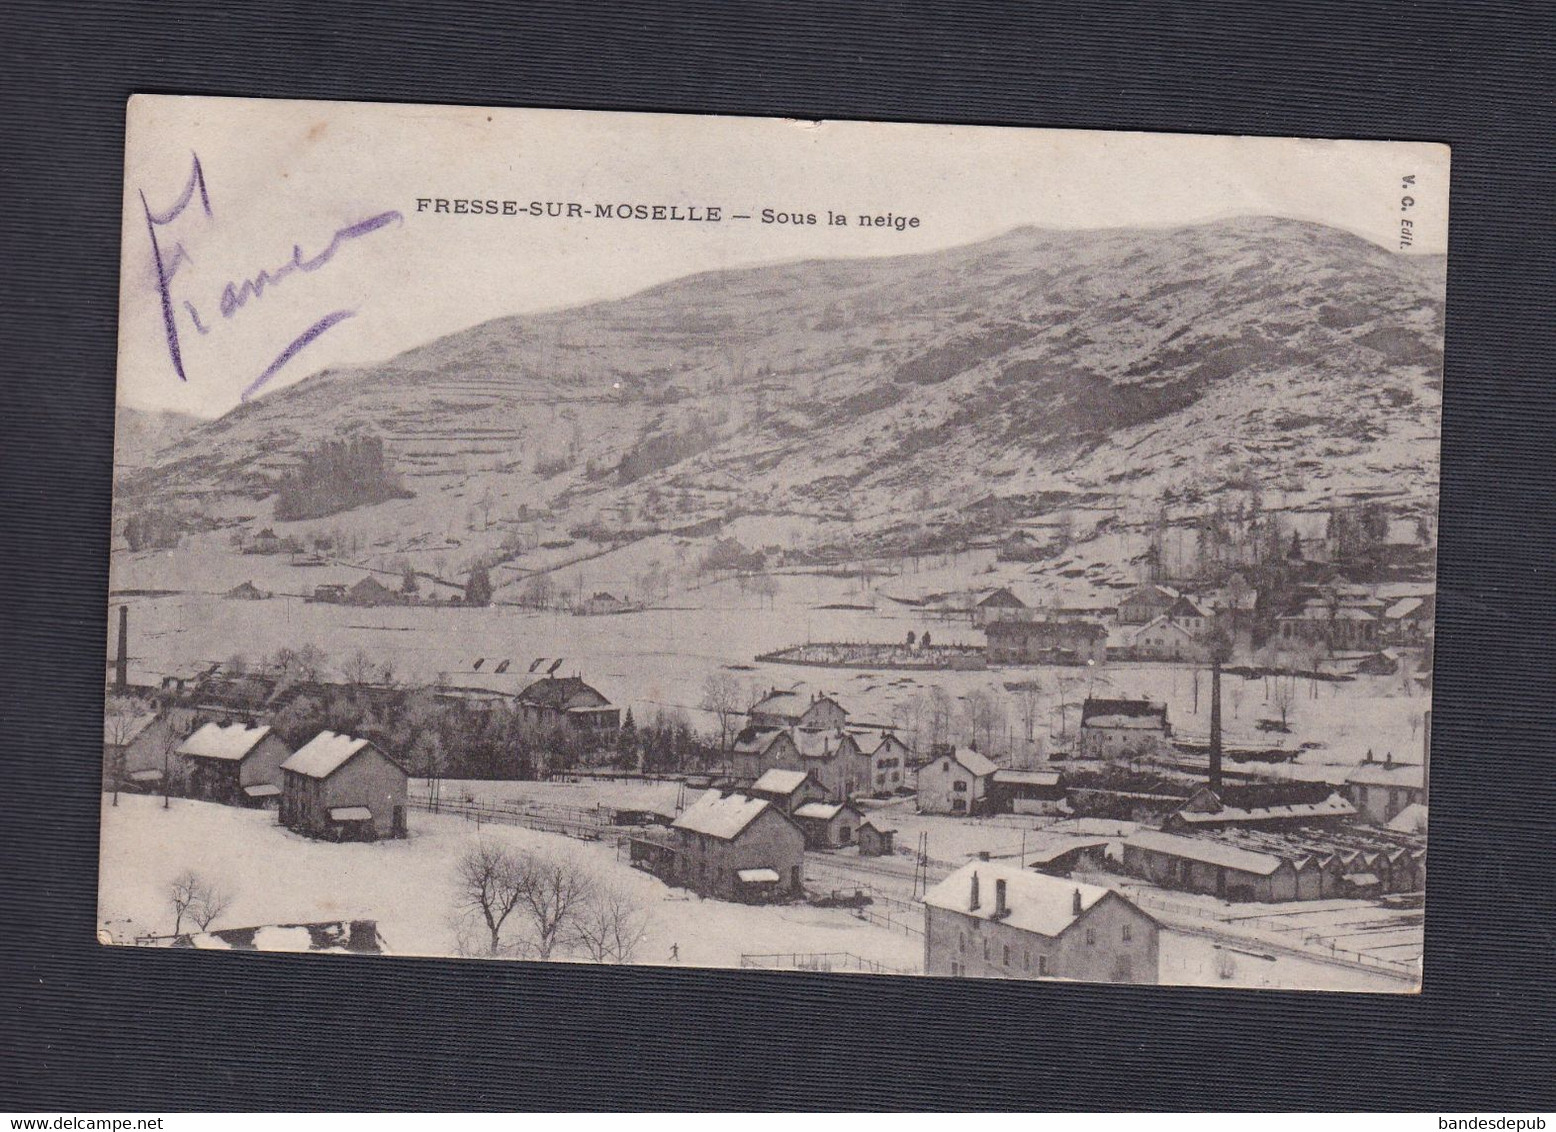 Vente Immediate Fresse Sur Moselle (88) Sous La Neige (Ed. V. C. 43839) - Fresse Sur Moselle